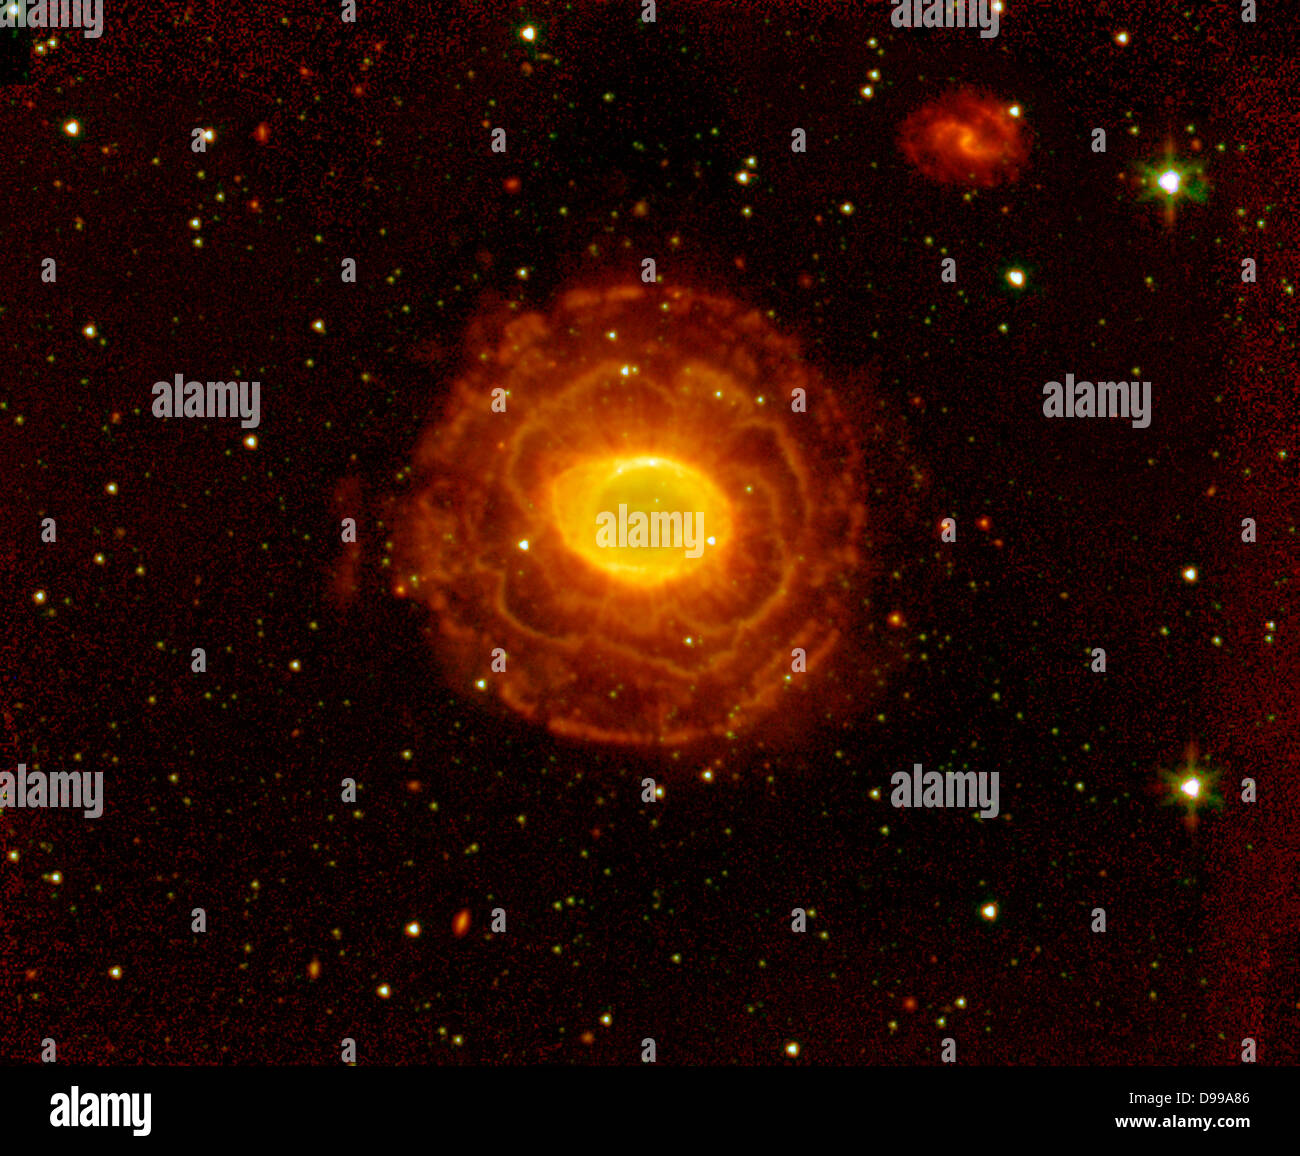 Der "Ring" ist eine dicke Zylinder aus glühendem Gas- und Staubscheibe um den Stern zum Scheitern verurteilt. Als der Stern beginnt der Kraftstoff, der Kern wird kleiner und heißer, Kochen, seine äußeren Schichten. Ringnebel. Spitzer Space Telescope. Stockfoto